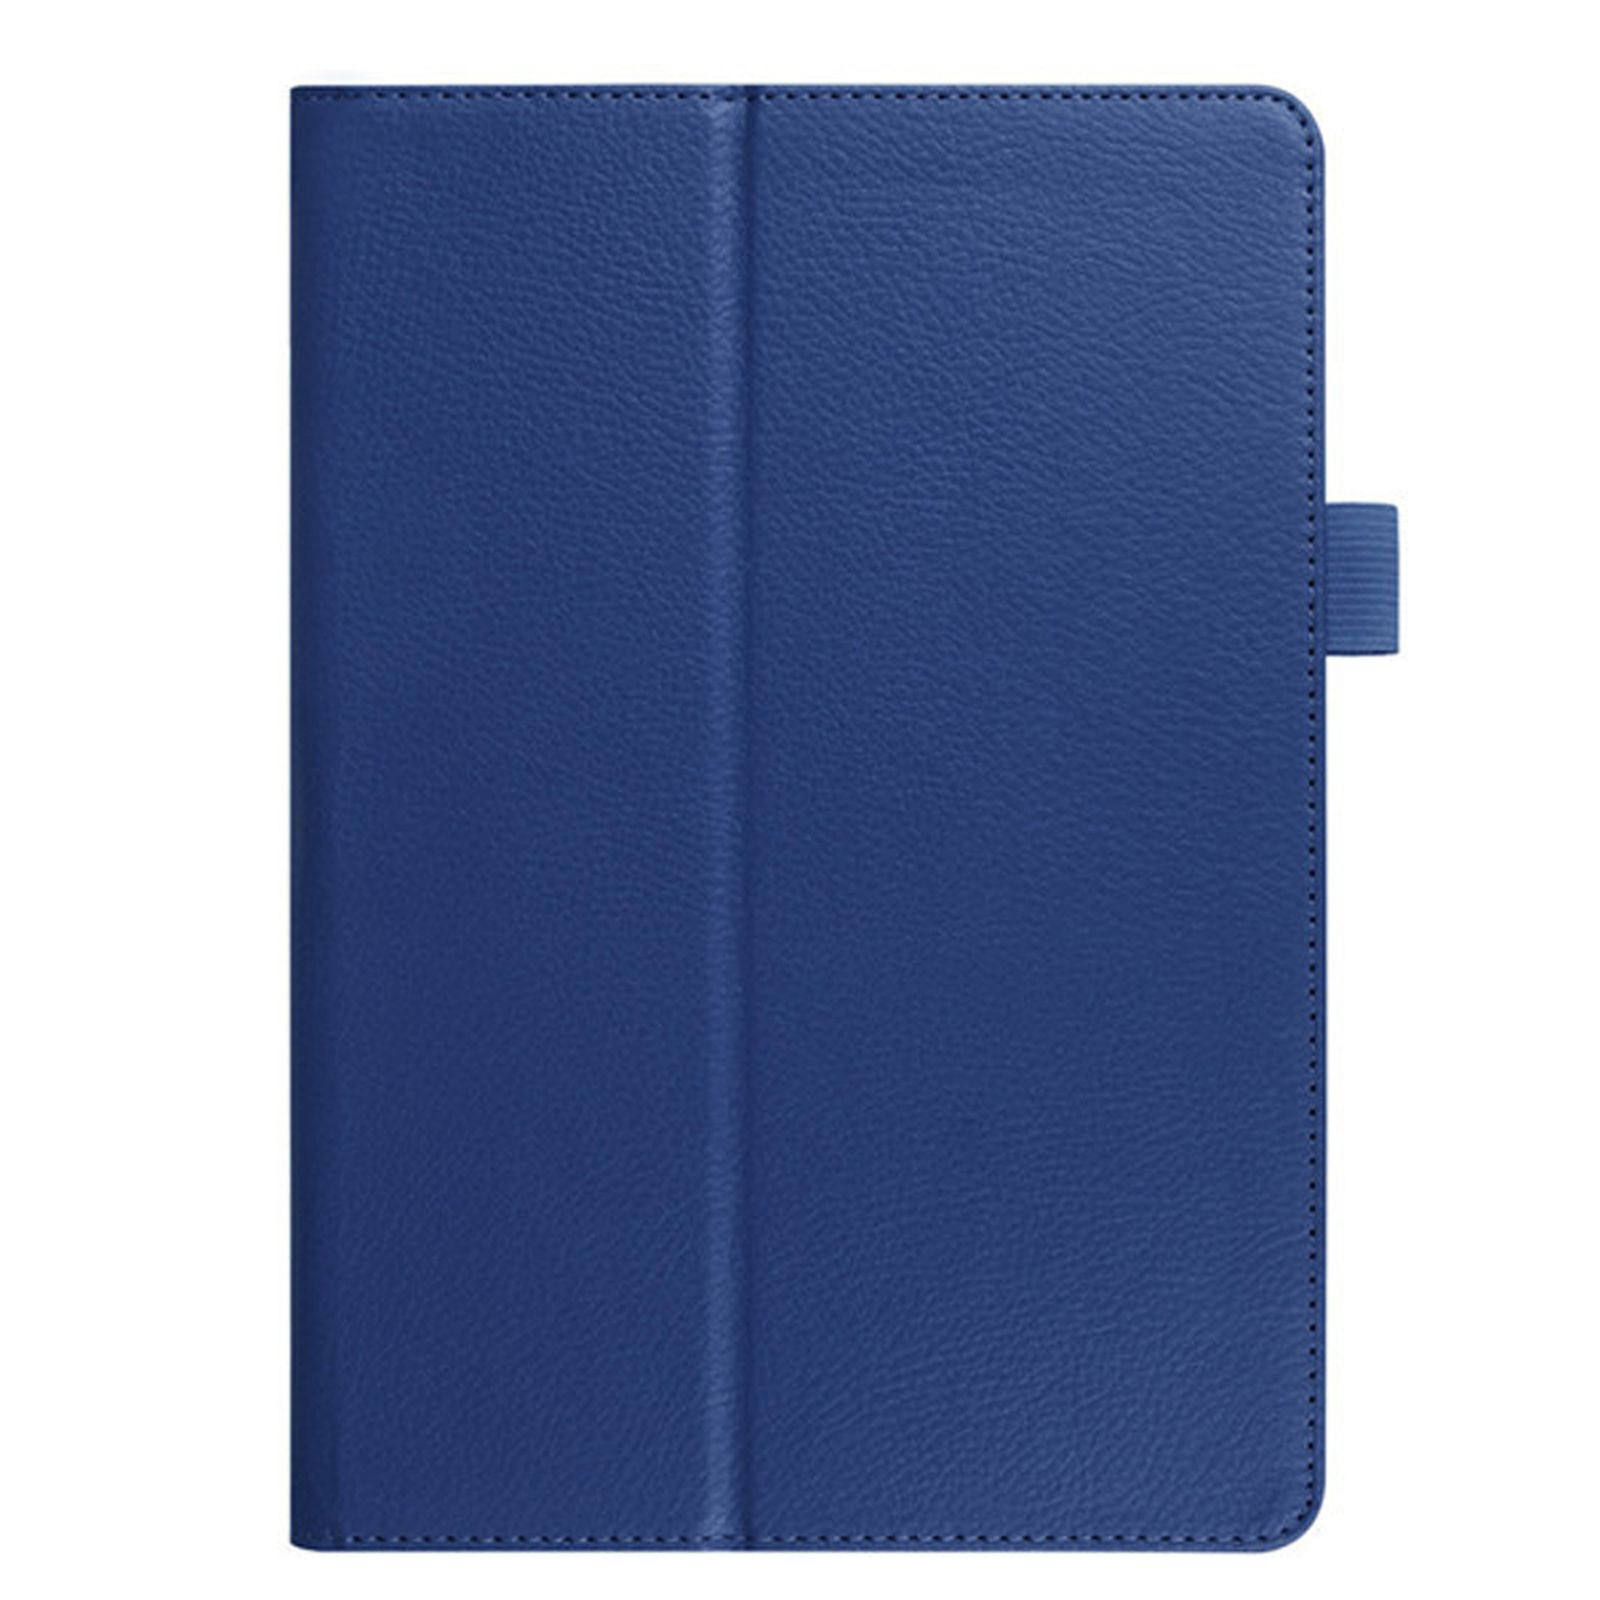 2020/2022 Bookcover 11 2020/2021 4 Blau Schutzhülle Kunstleder, für Pro 11 LOBWERK 10.9 Ipad Air Apple Hülle Zoll,